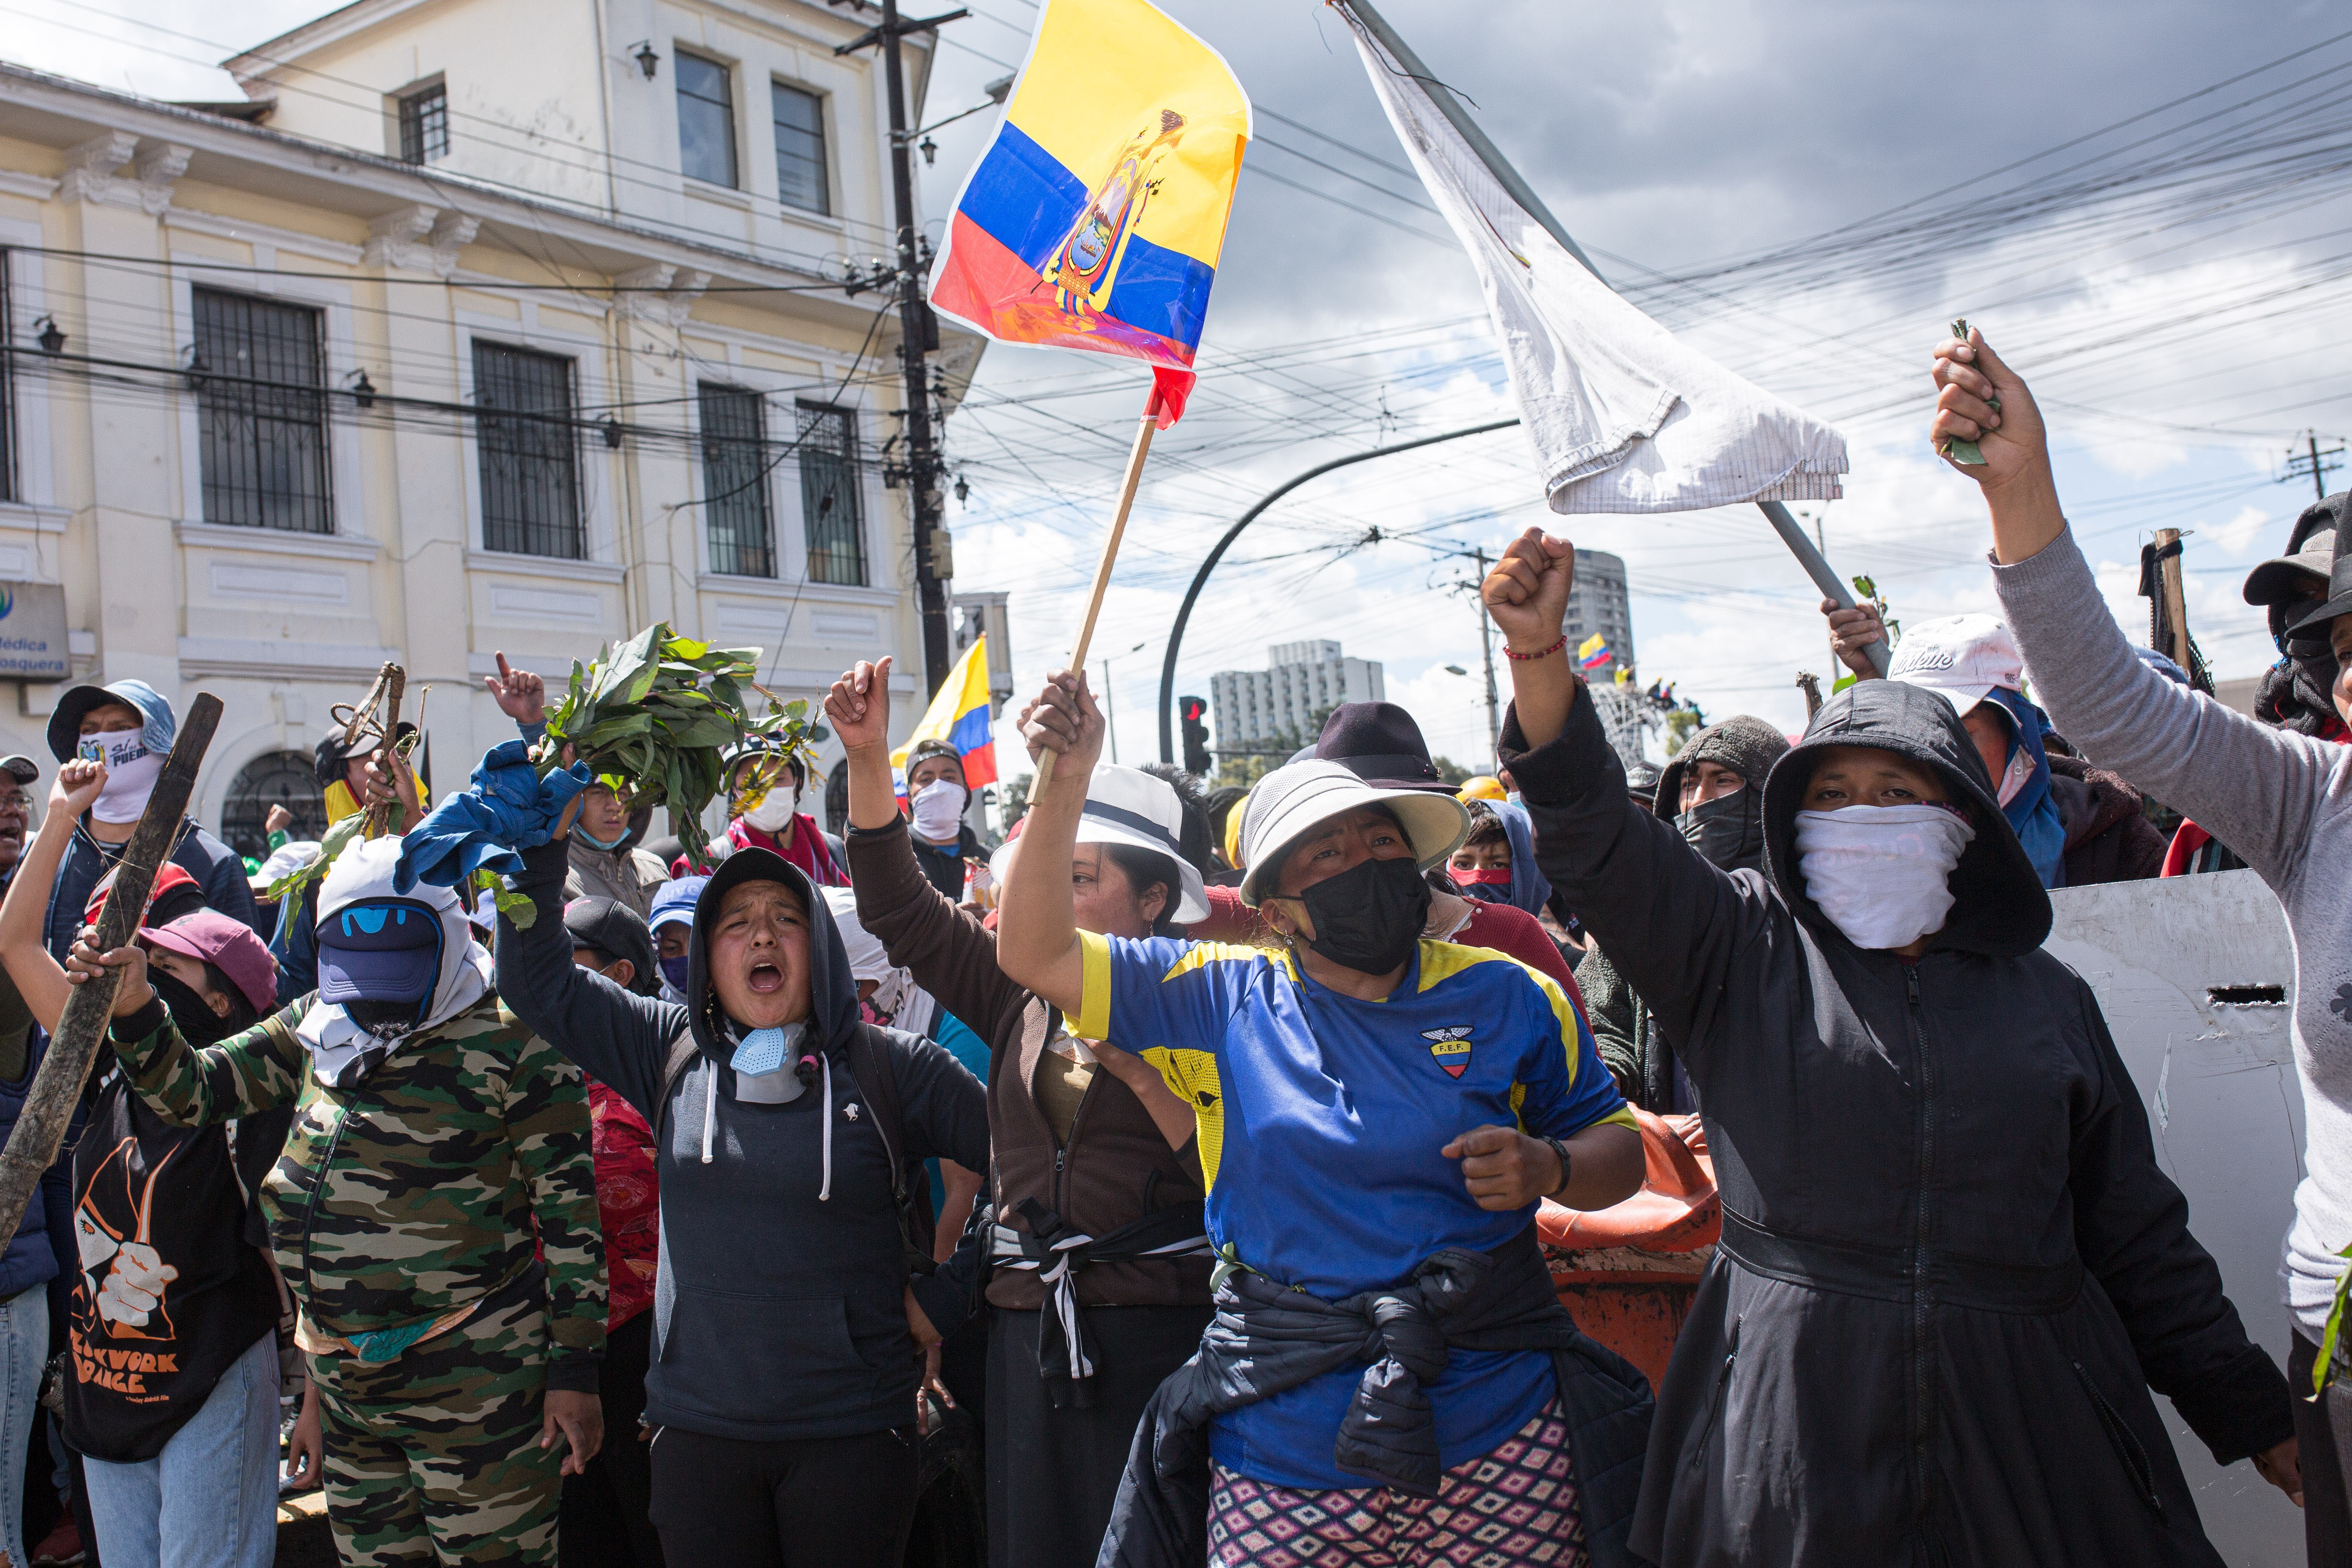 Ekvador yerli halklarık sokakta eylemde